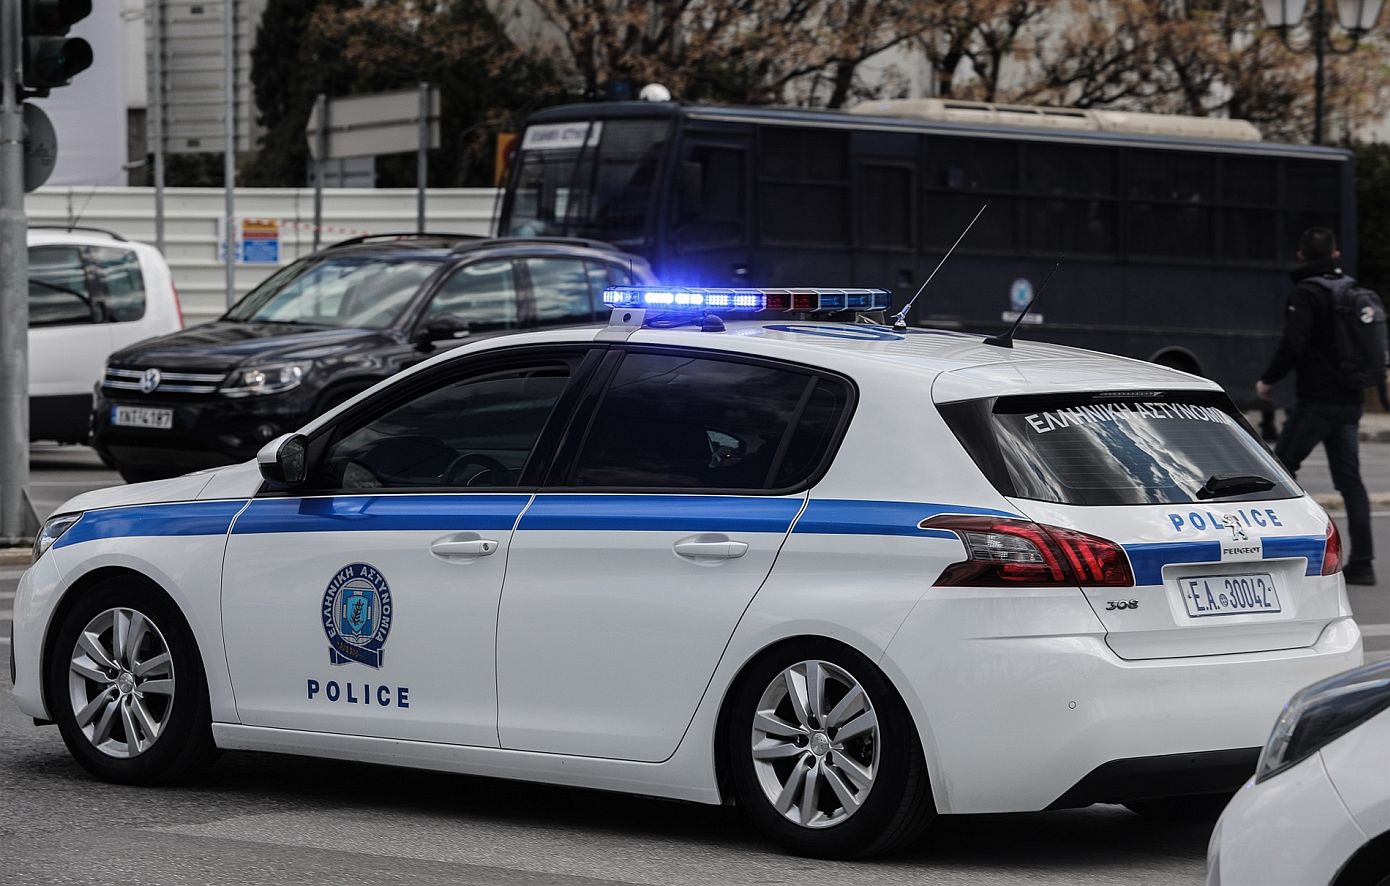 Γυναίκα στην Κρήτη κατήγγειλε ότι της έκλεψαν το αυτοκίνητο που είχε μέσα κοσμήματα αξίας 400.000 ευρώ